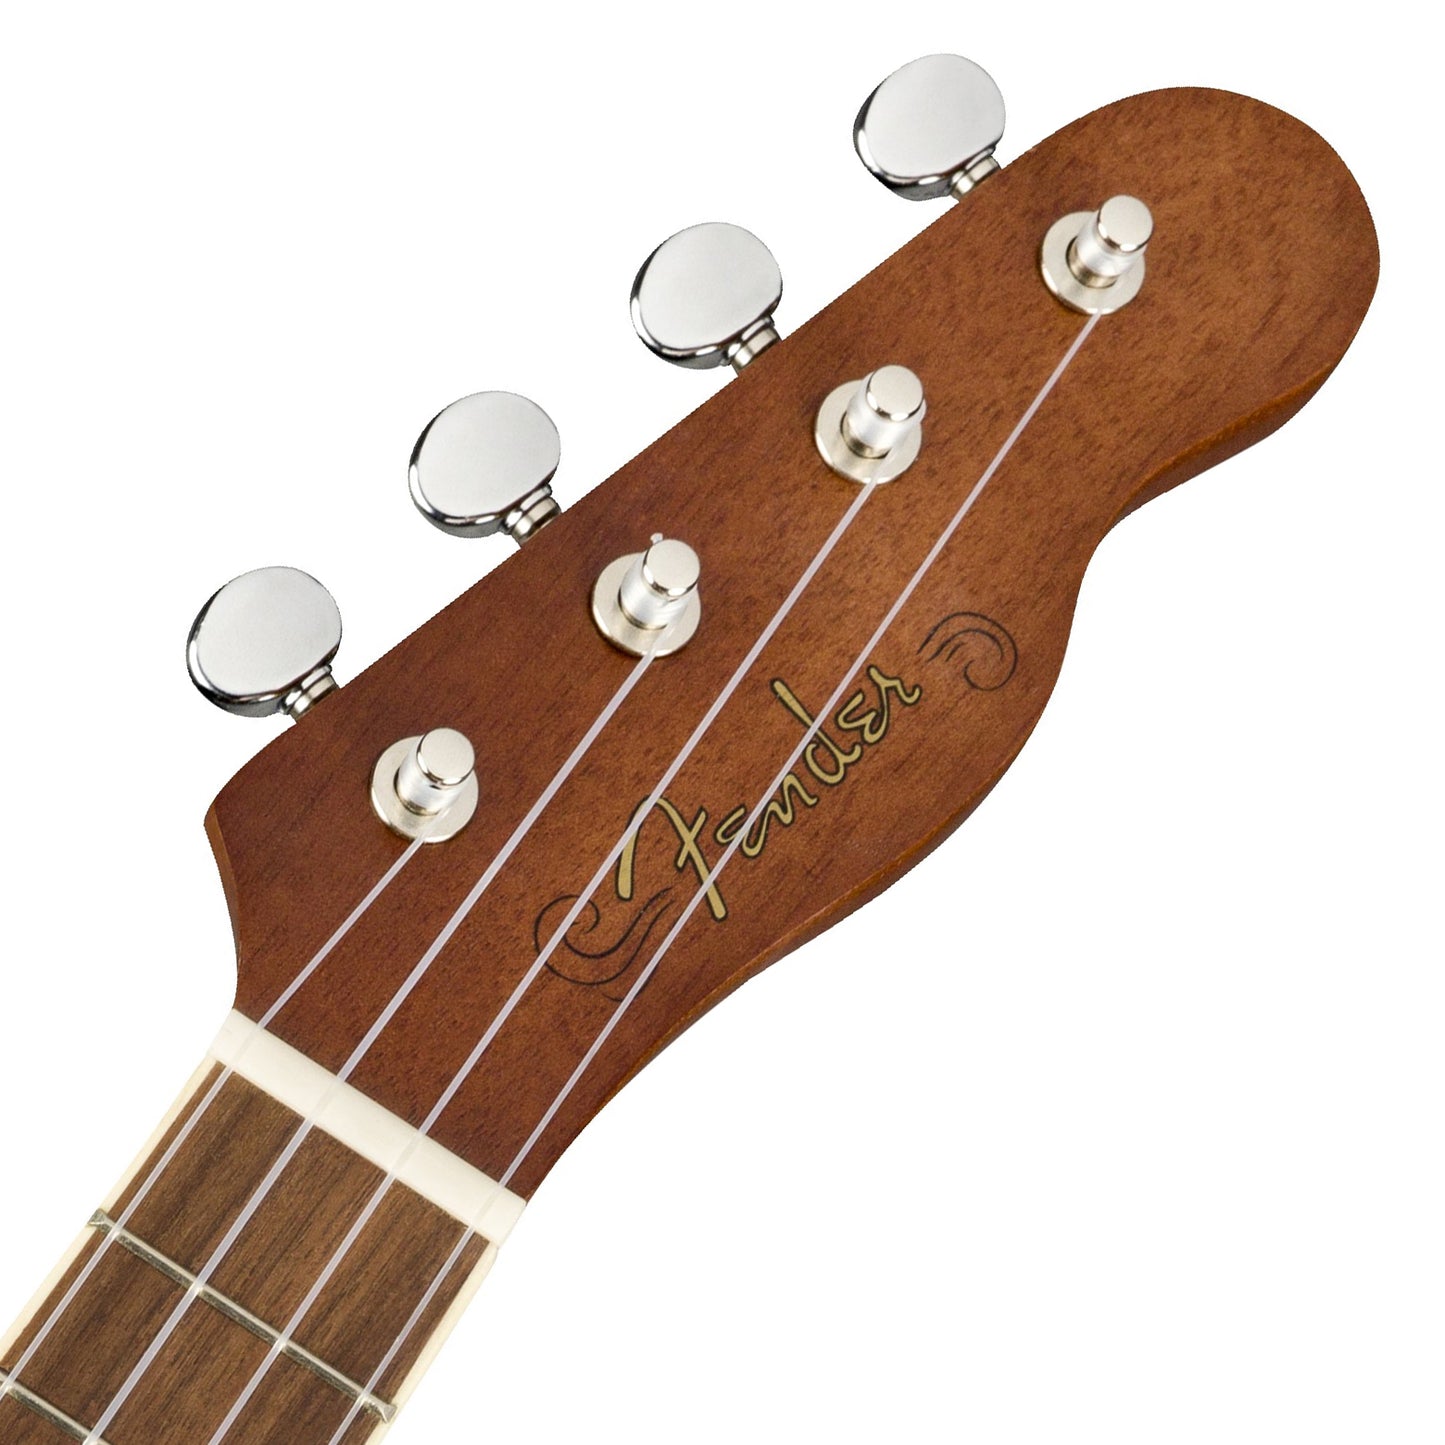 Fender Seaside Soprano Ukulele Pack (Clip On Tuner, Gig Bag, Strings) 16 Frets 4 String Guitar Set with Walnut Fingerboard (Natural)